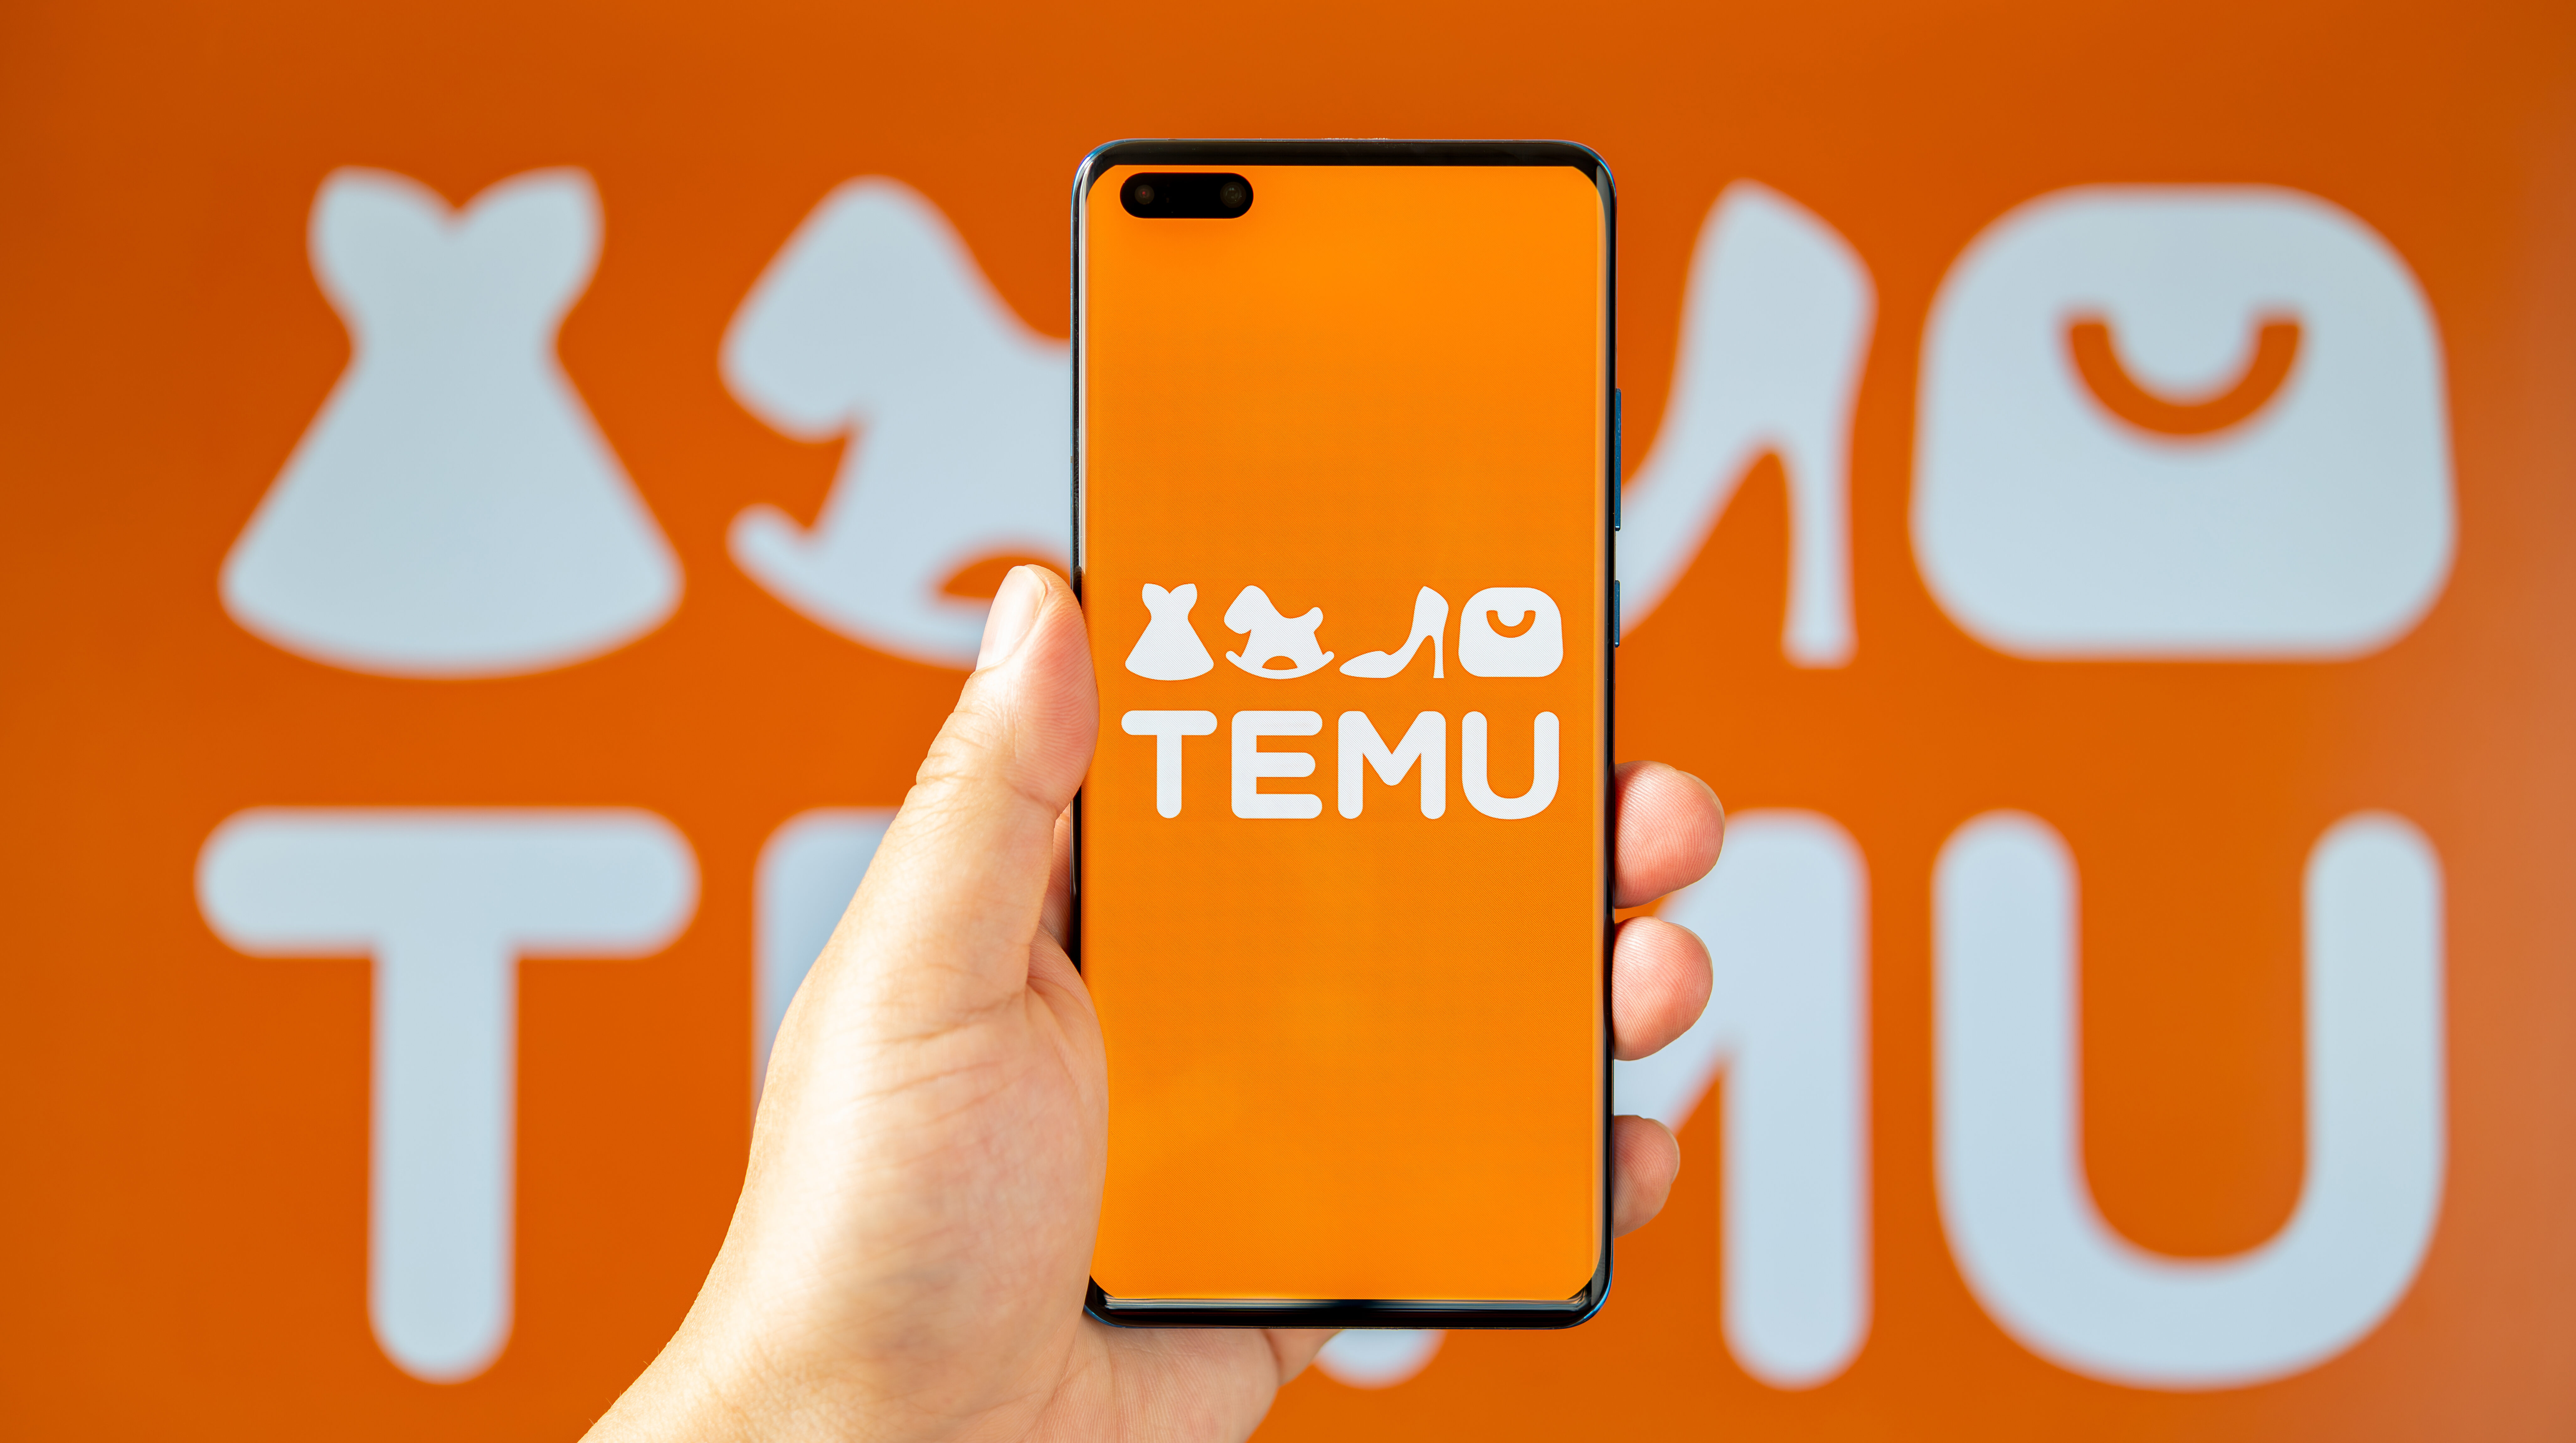 Temu app on smartphone